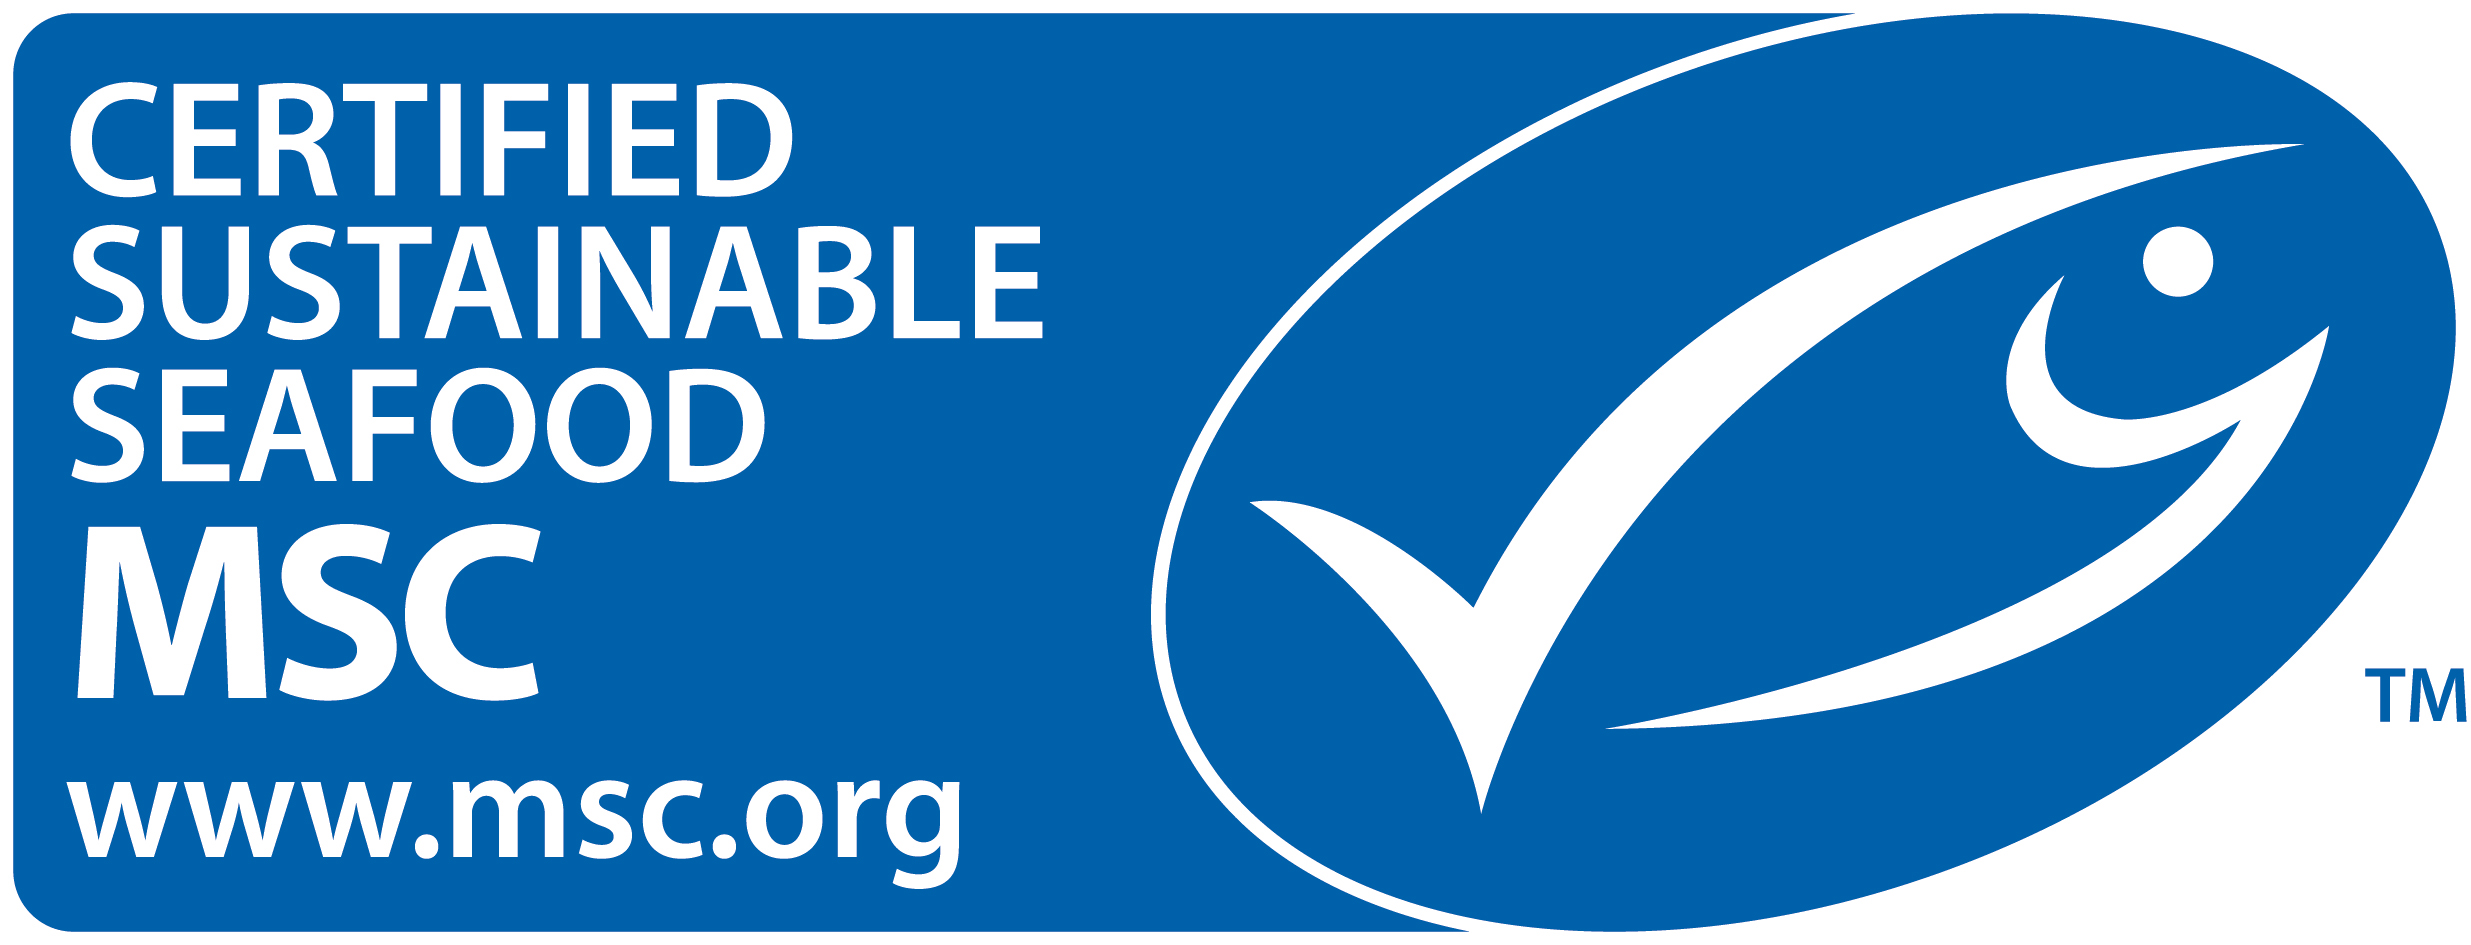 MSC Certification Mark